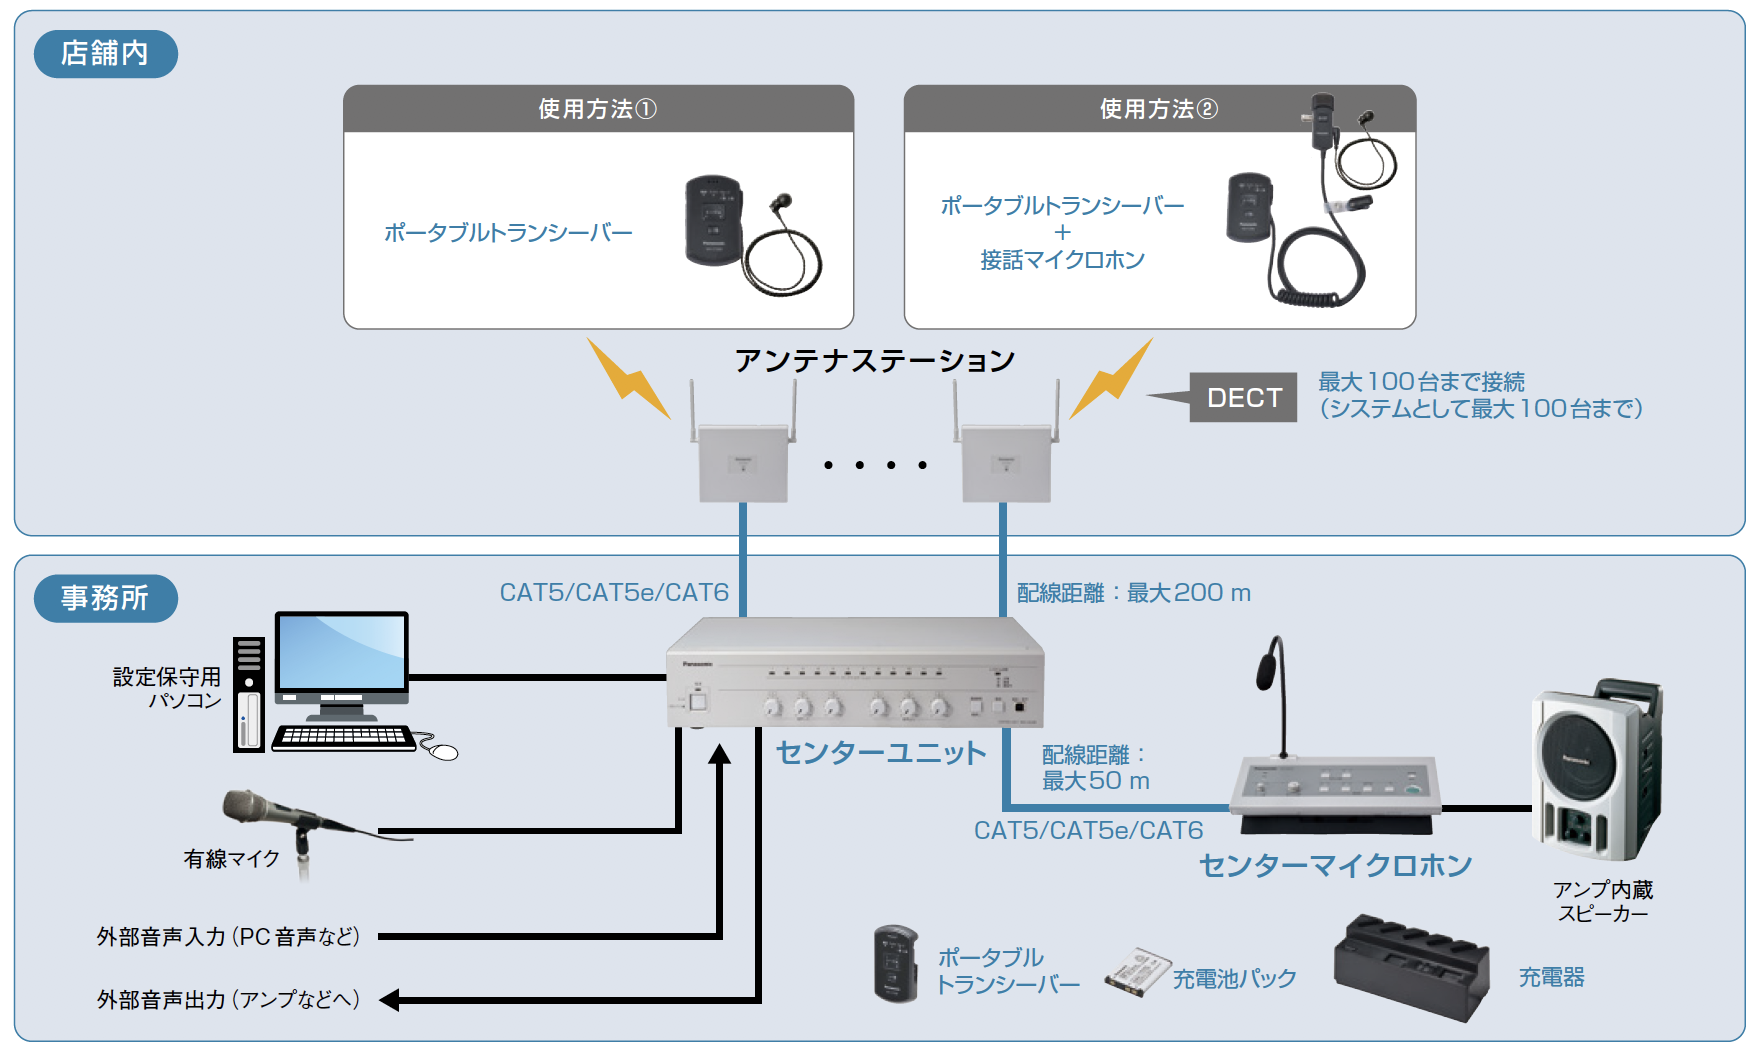 1.9GHz 帯 デジタルワイヤレス インターカムシステム システム構成例